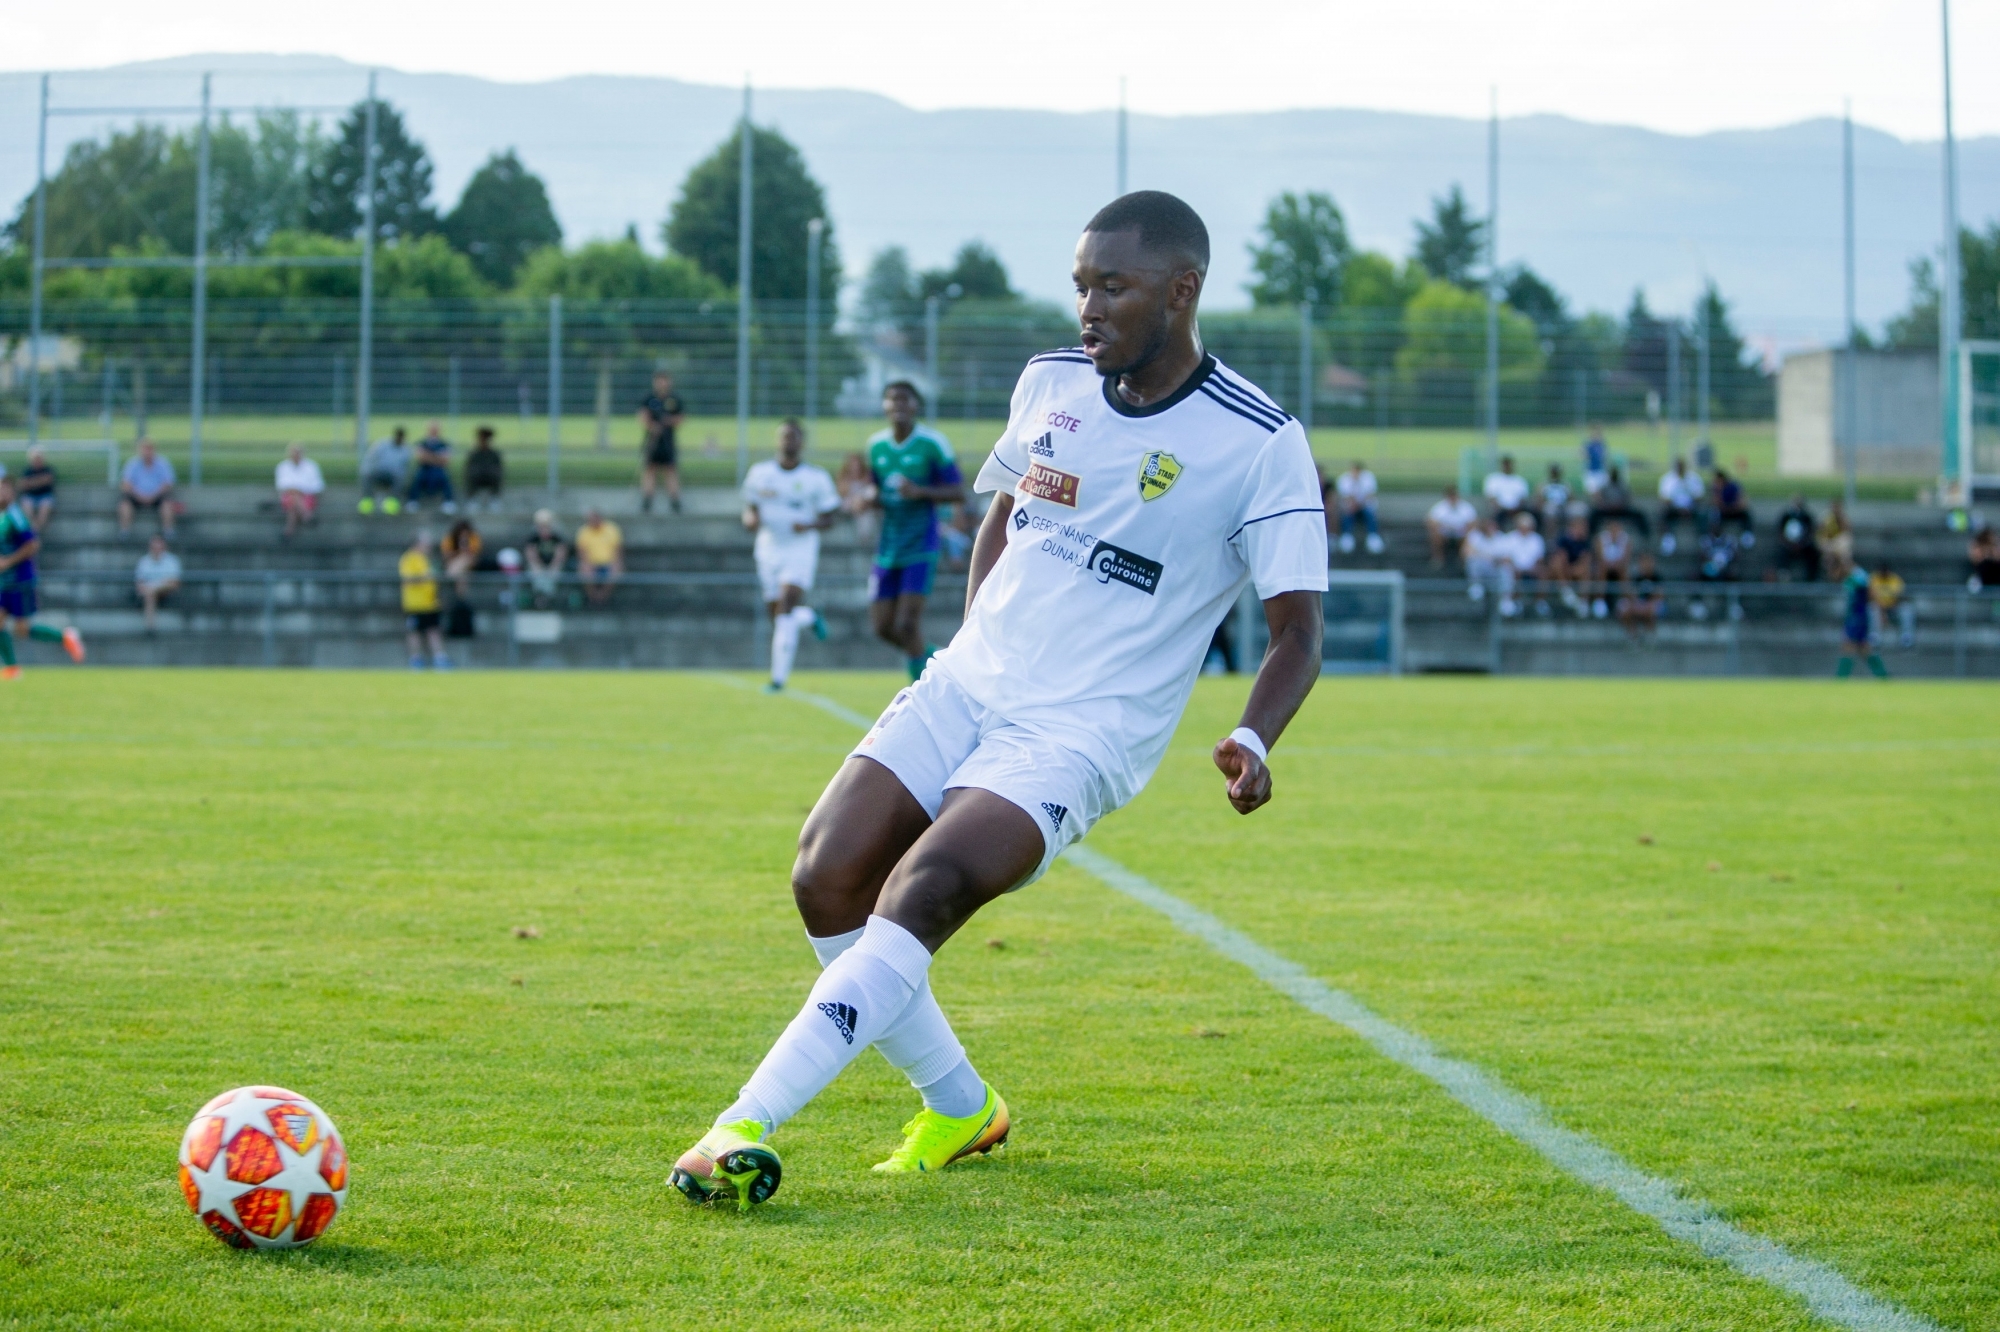 Pour son dernier match à Colovray avant de rejoindre Stade Lausanne-Ouchy, Belly Vumbi a brillé.